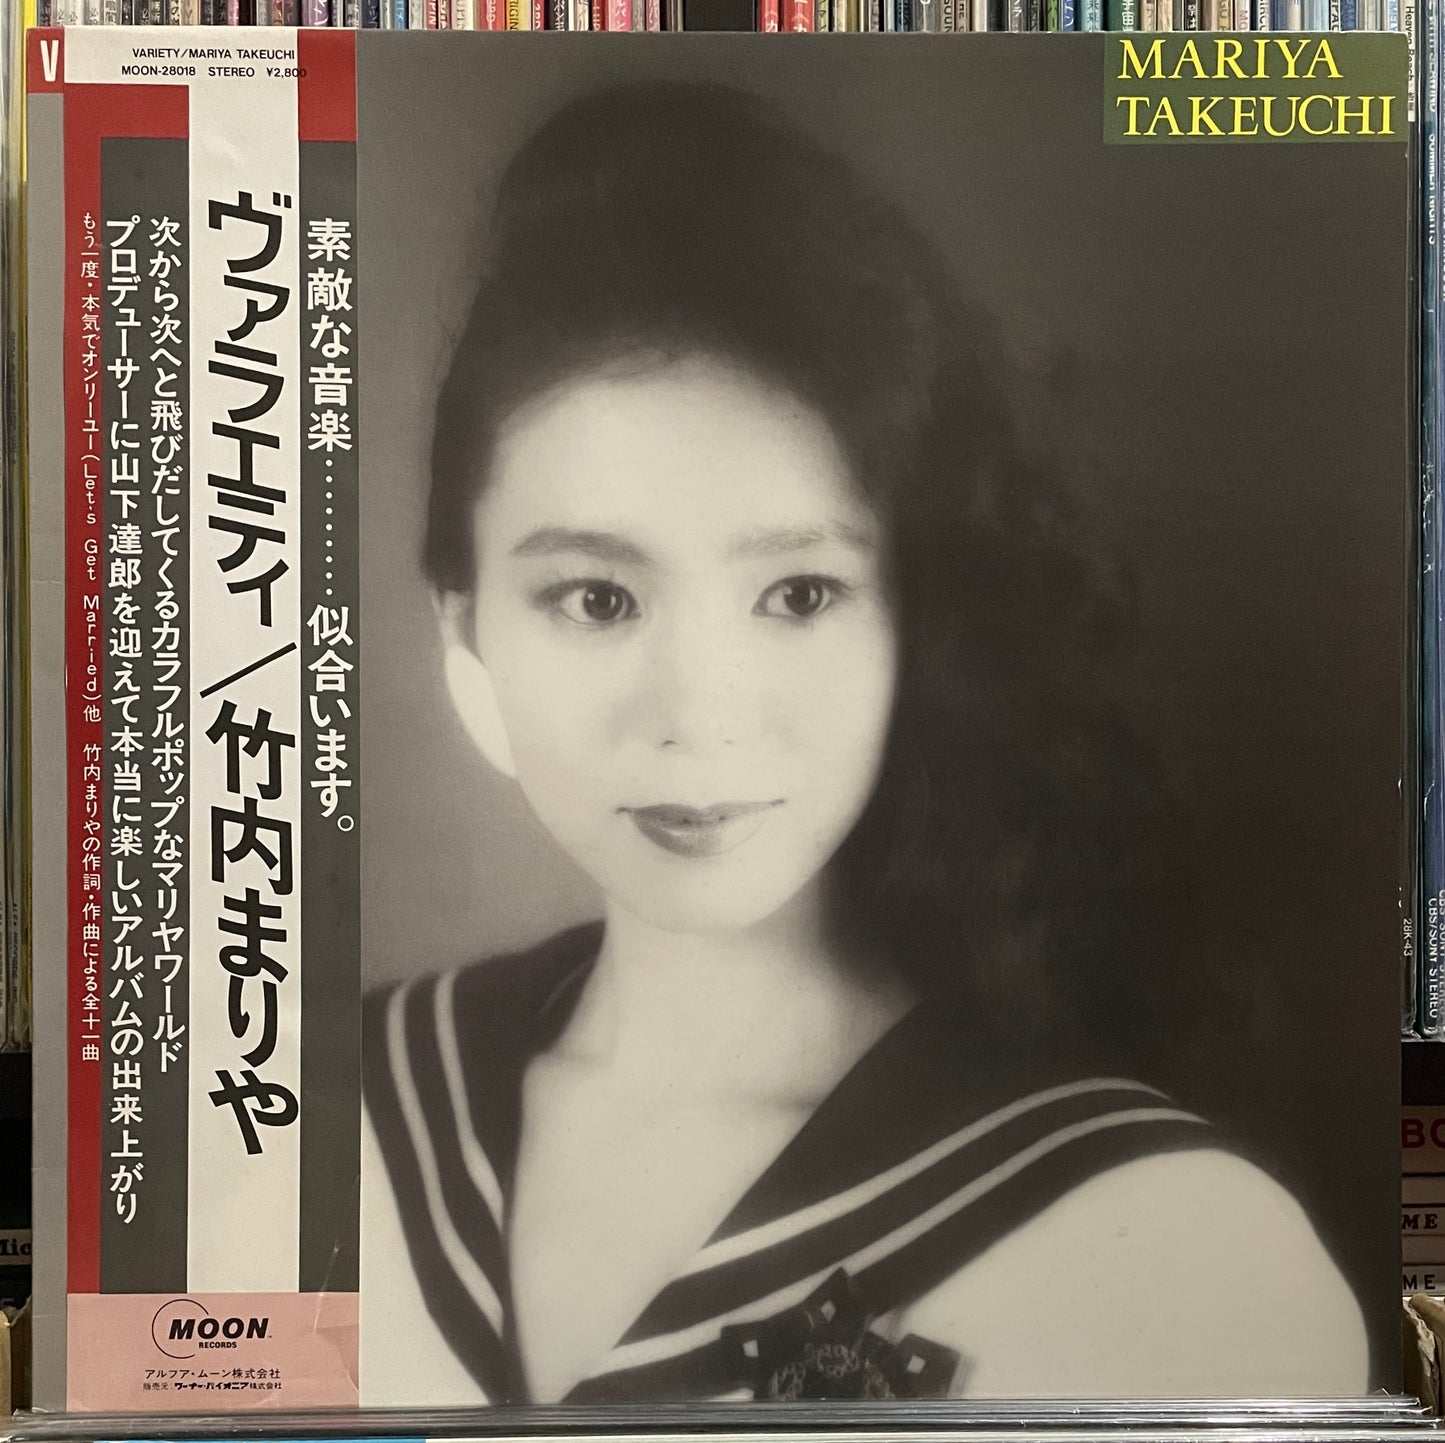 Mariya Takeuchi “Variety” (1984)